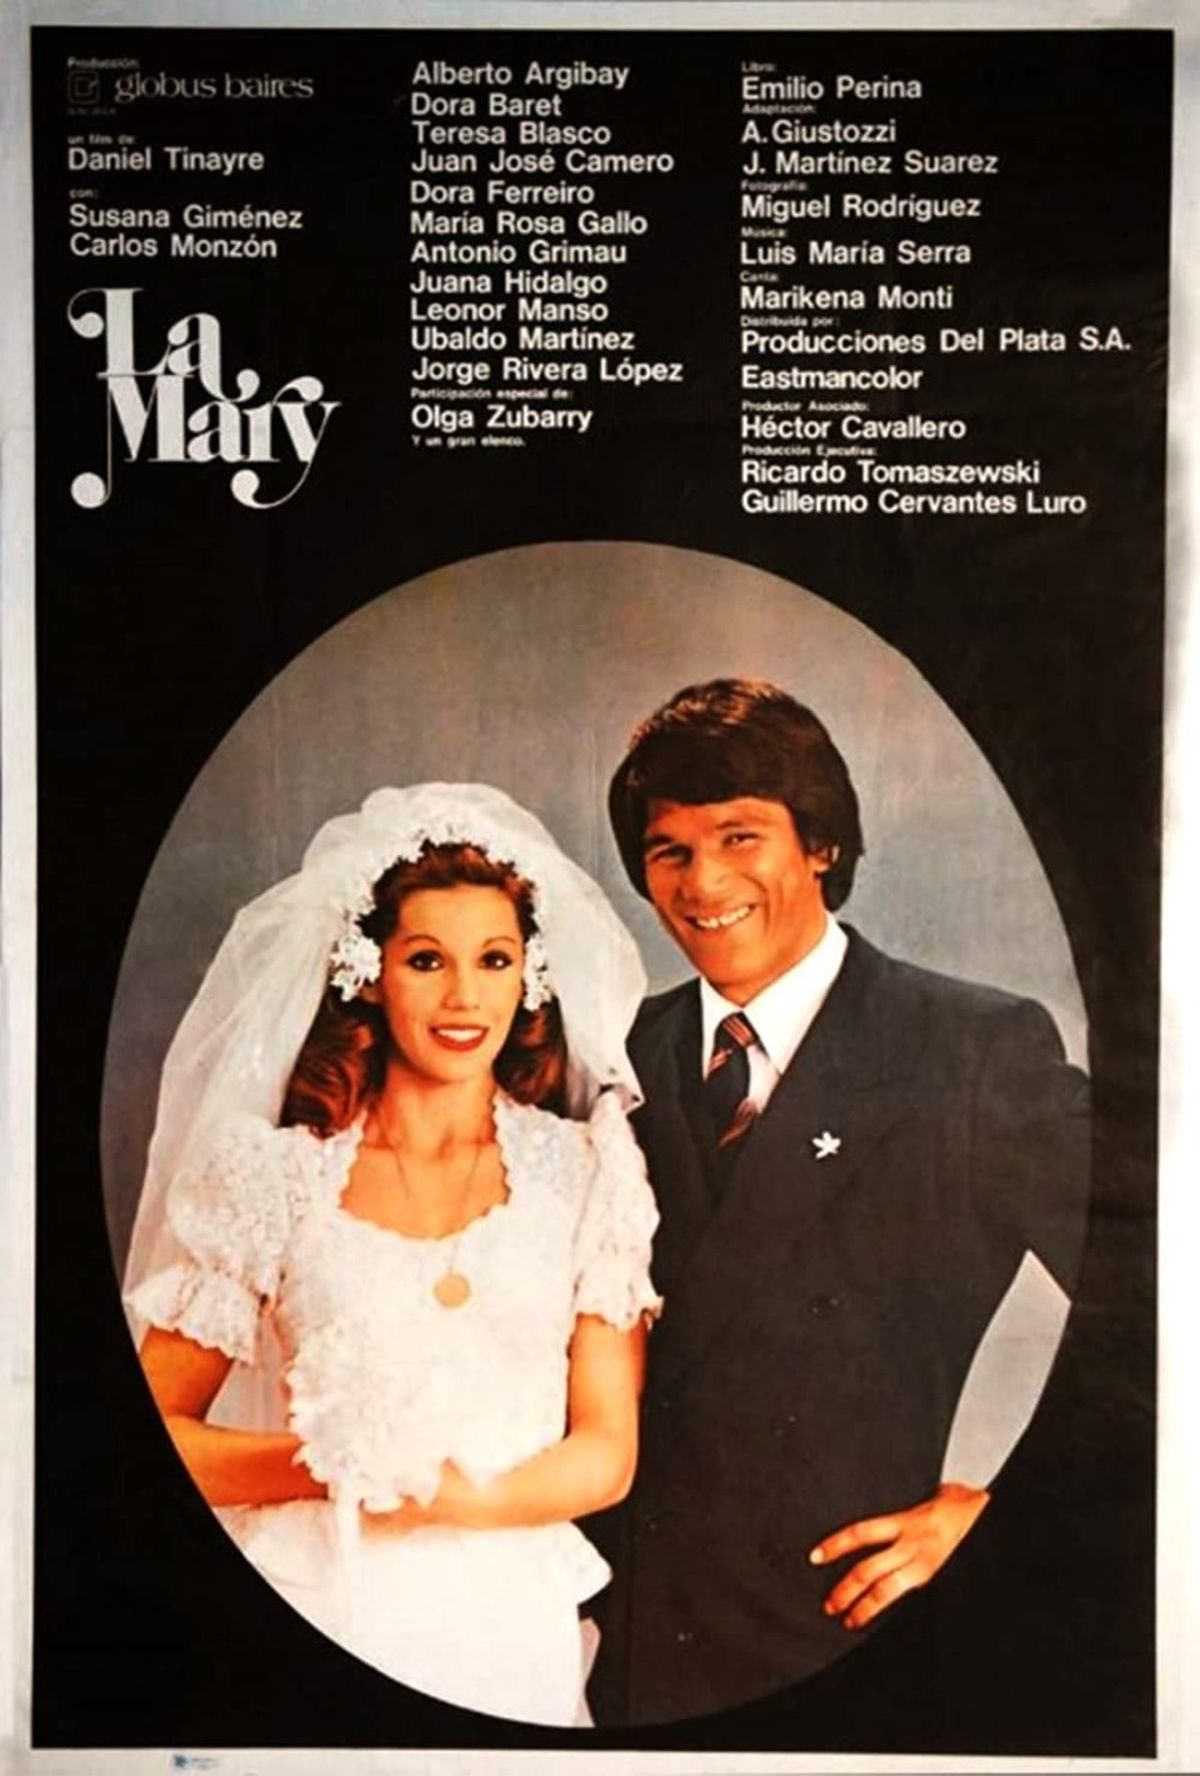 El 8 de marzo de 1974 se anunció el inicio de la filmación de La Mary, la película que significó el debut actoral de Monzón y que coprotagonizó con Susana Giménez. Dos días después, comenzó el rodaje en los estudios San Miguel de Bella Vista, Gran Buenos Aires.